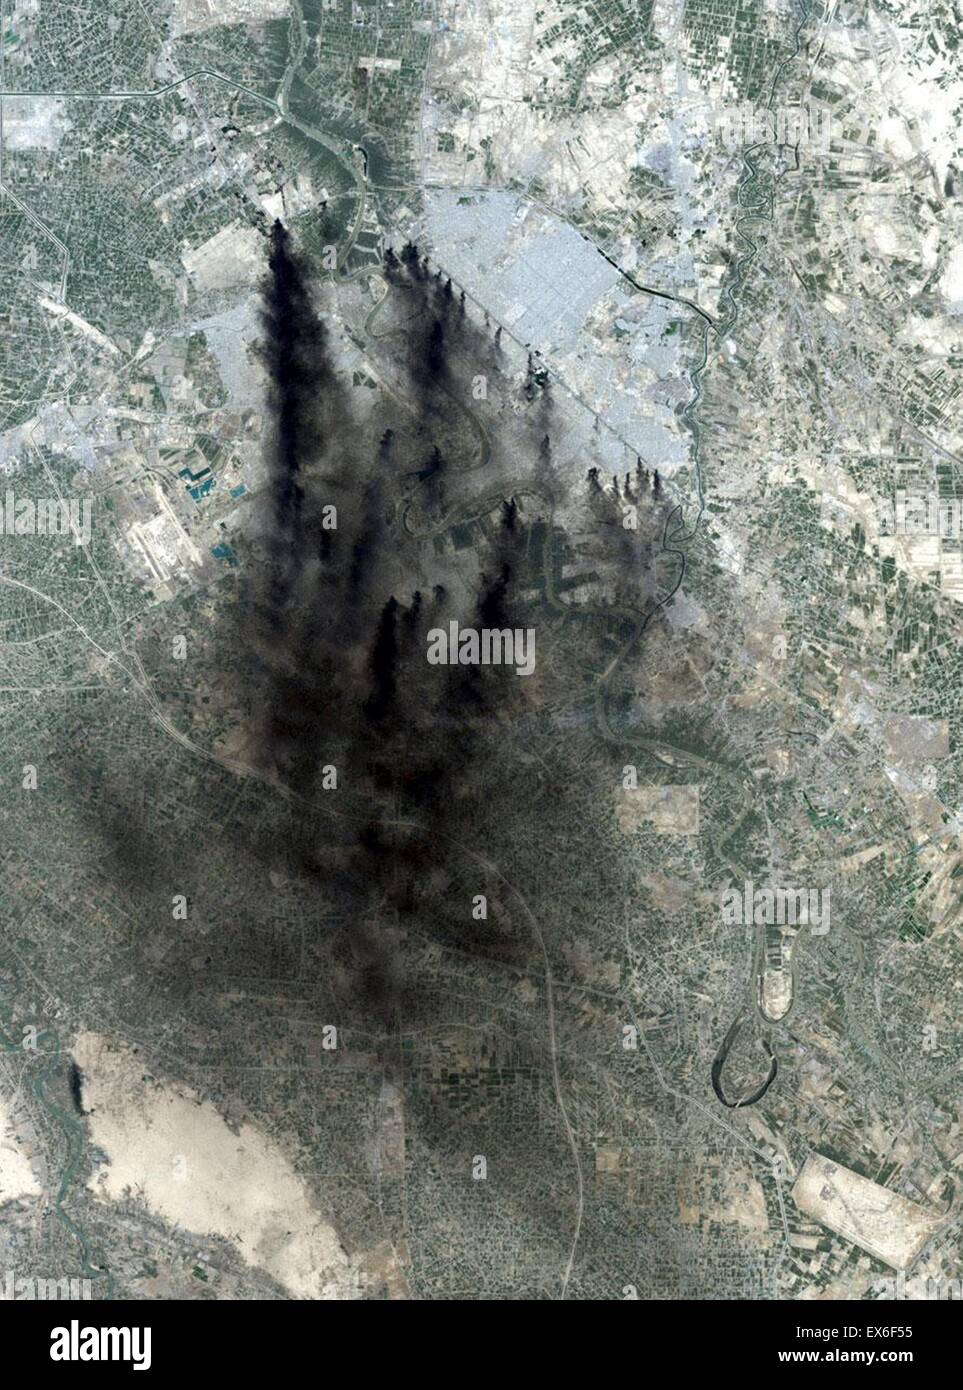 Los incendios de los bombardeos de la coalición durante la segunda guerra en Iraq ofreció un dramático, llenos de humo imagen sobre Bagdad. El río Tigris serpientes de norte a sur en esta imagen. El Aeropuerto Internacional de Bagdad está al oeste del humo. Foto de stock